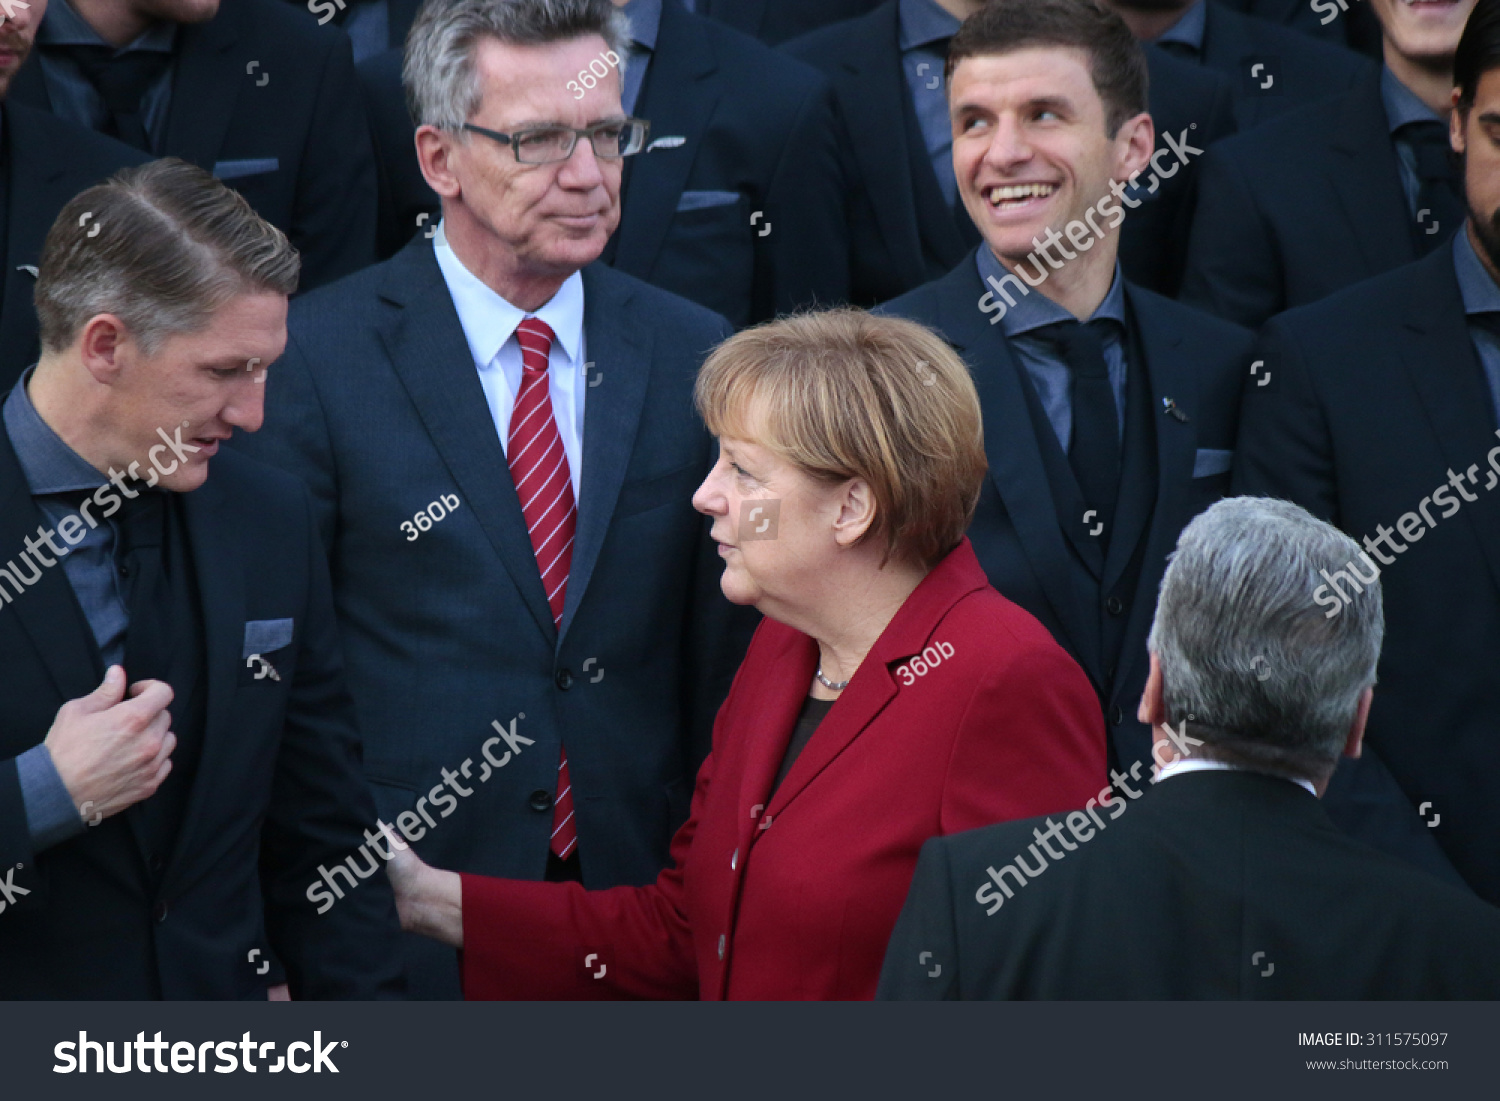 2014年11月10日-柏林:Joachim Gauck,德国总